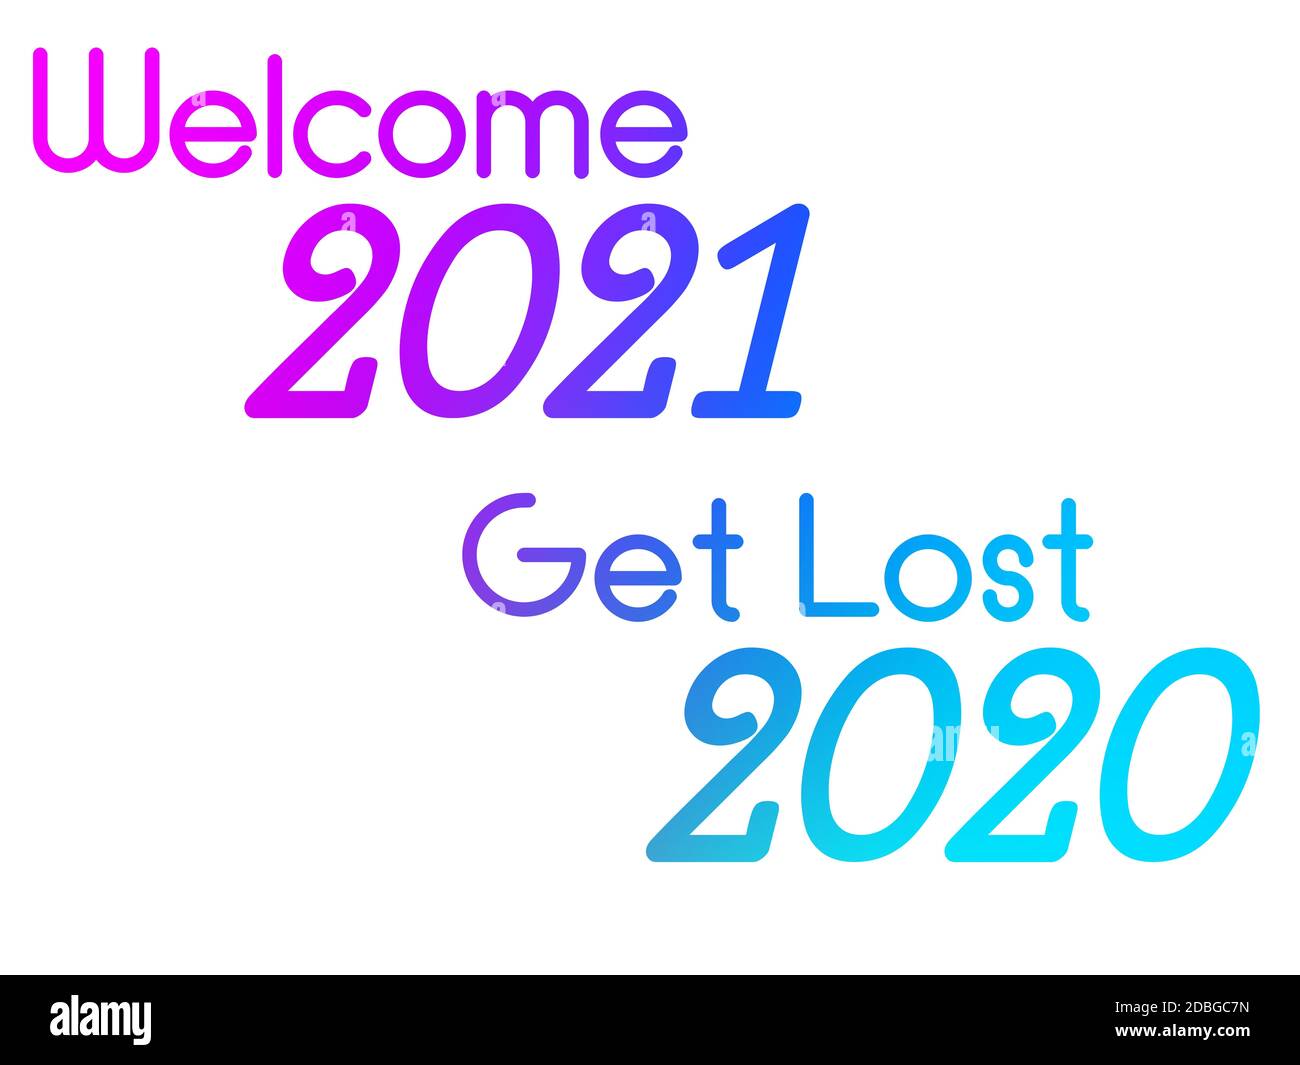 Une illustration colorée d'une nouvelle année heureuse avec phase Welcome 2021 Get Lost 2020. Banque D'Images